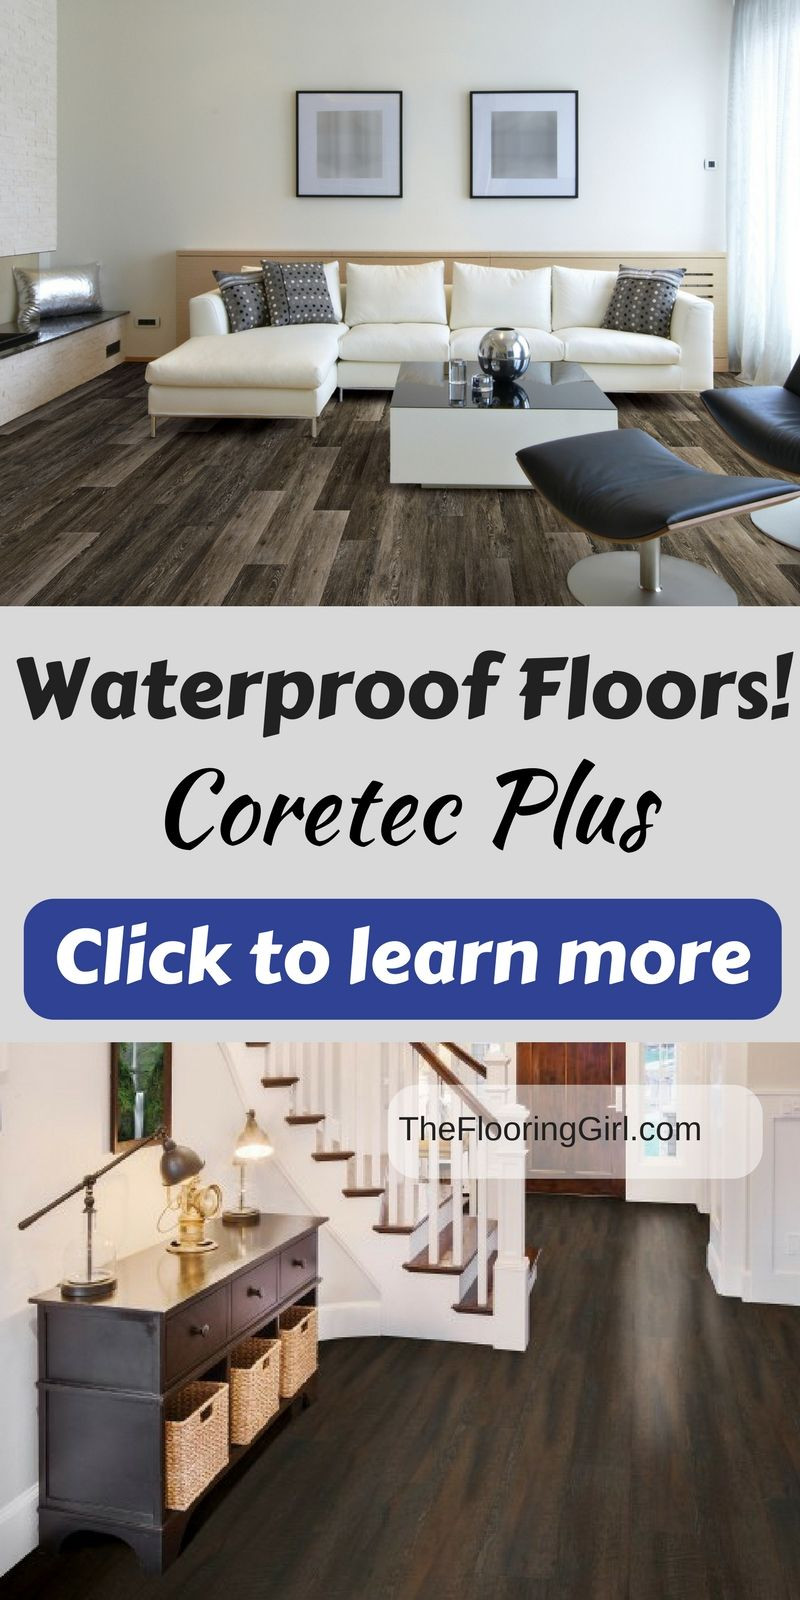 waterproof hardwood laminate flooring of review coretec plus luxury vinyl planks waterproof hardwood look with regard to review coretec plus luxury vinyl planks waterproof hardwood look